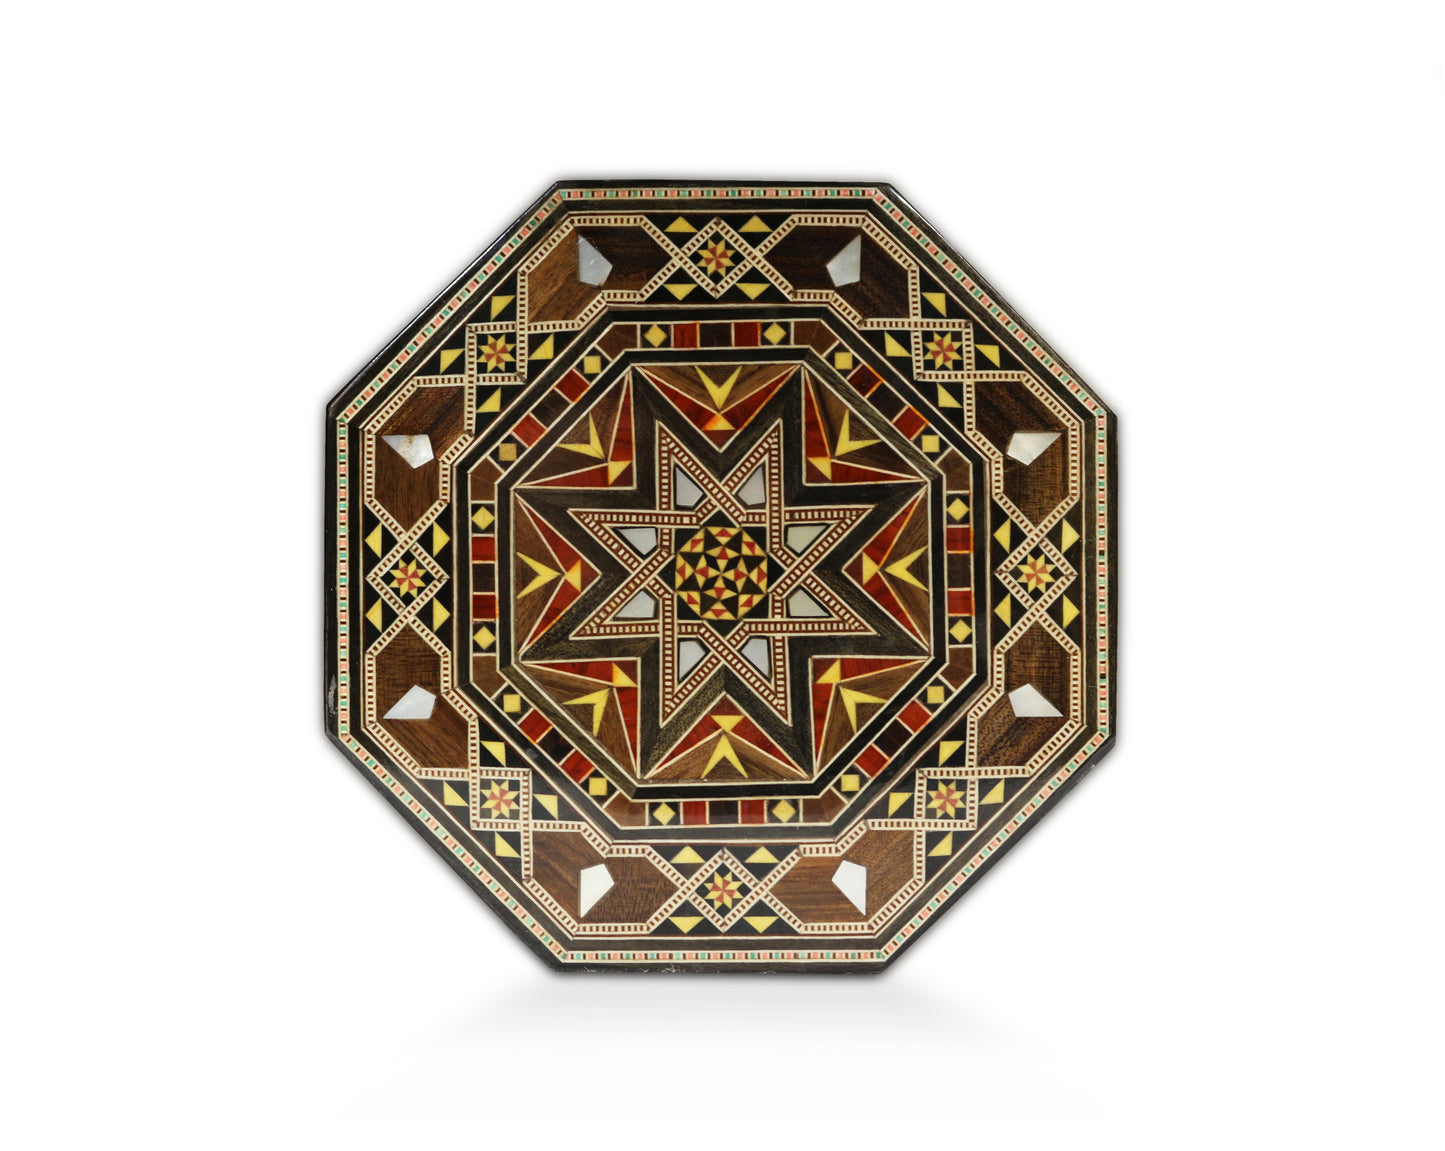 Neu Holz Mosaik Schatulle,Box,Kästchen,mit perlmutt Damaskunst K 1-2-84